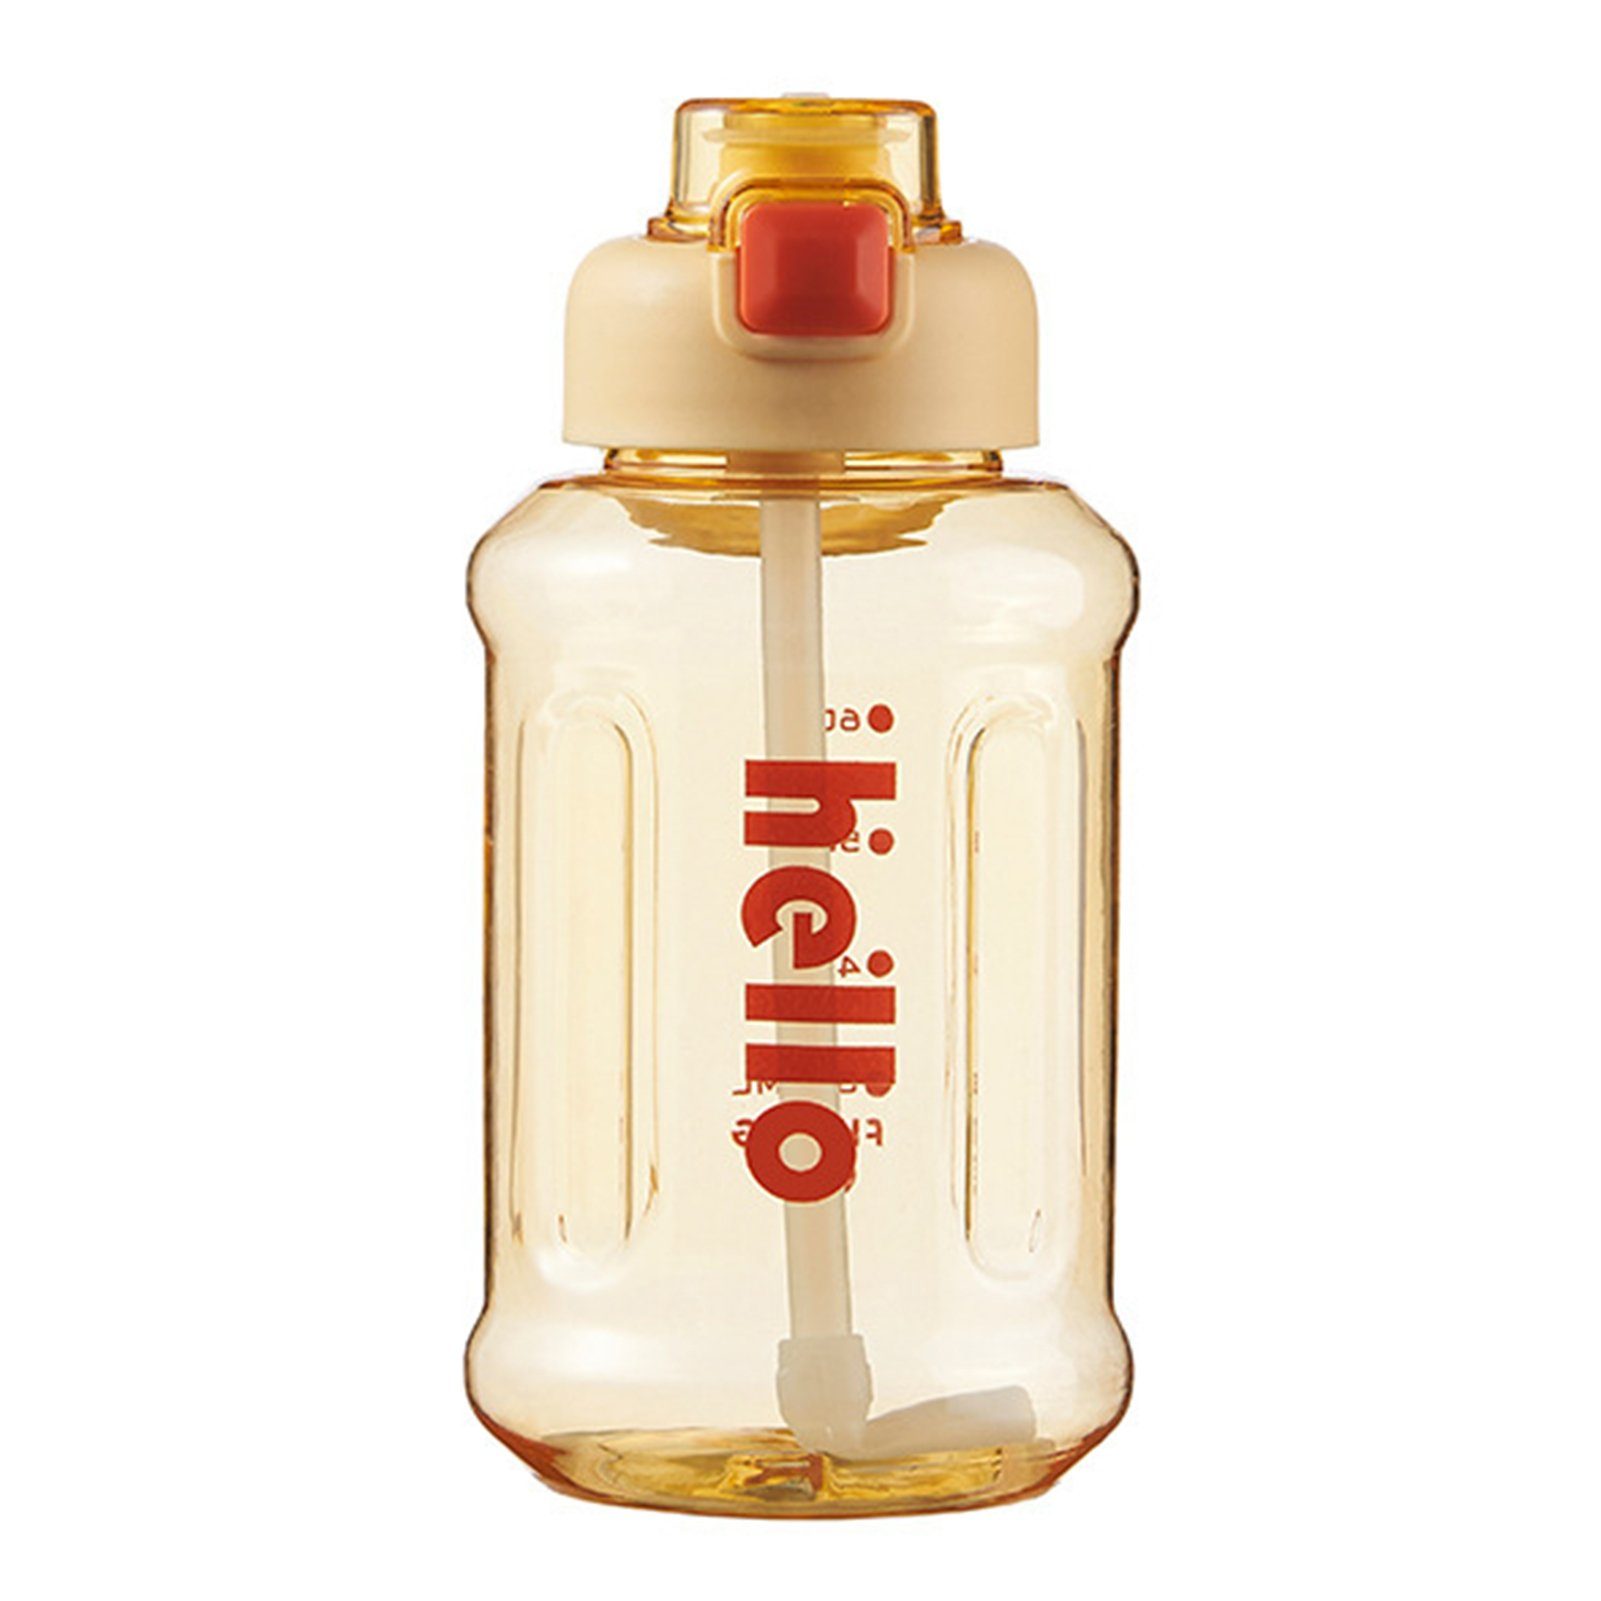 Blusmart Trinkflasche Tragbarer Stroh-Wasserbecher Mit Griff, Hoher Kapazität, Versiegelter, Trinkflasche yellow 800ml